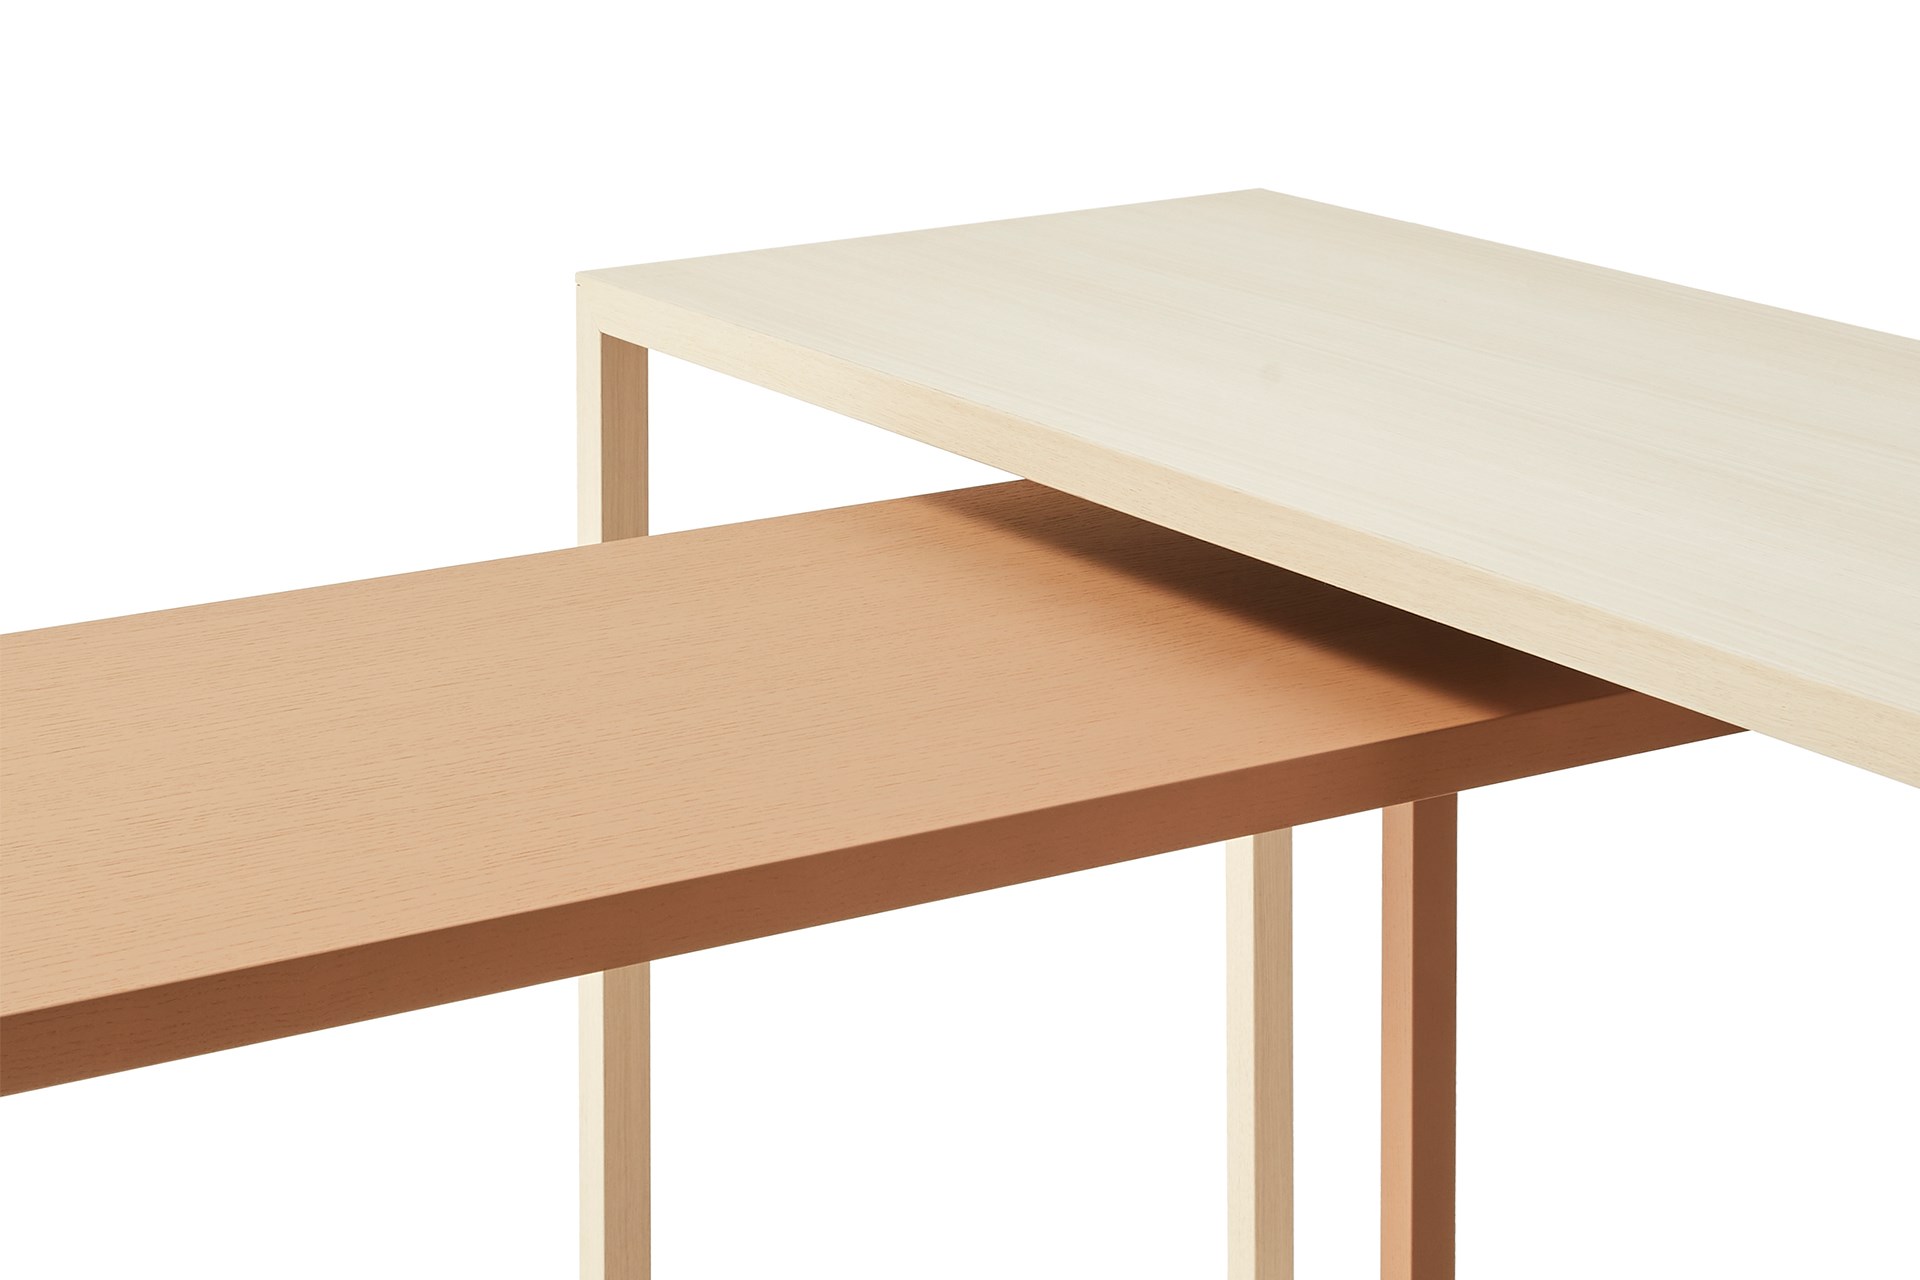 Rustikaler Heizkörper Konsole Slimline Tisch mit weißen HaarnadelBeinen  Behandelter Holzstil Massivholz Möbel 14,4CM X 4,4CM - .de